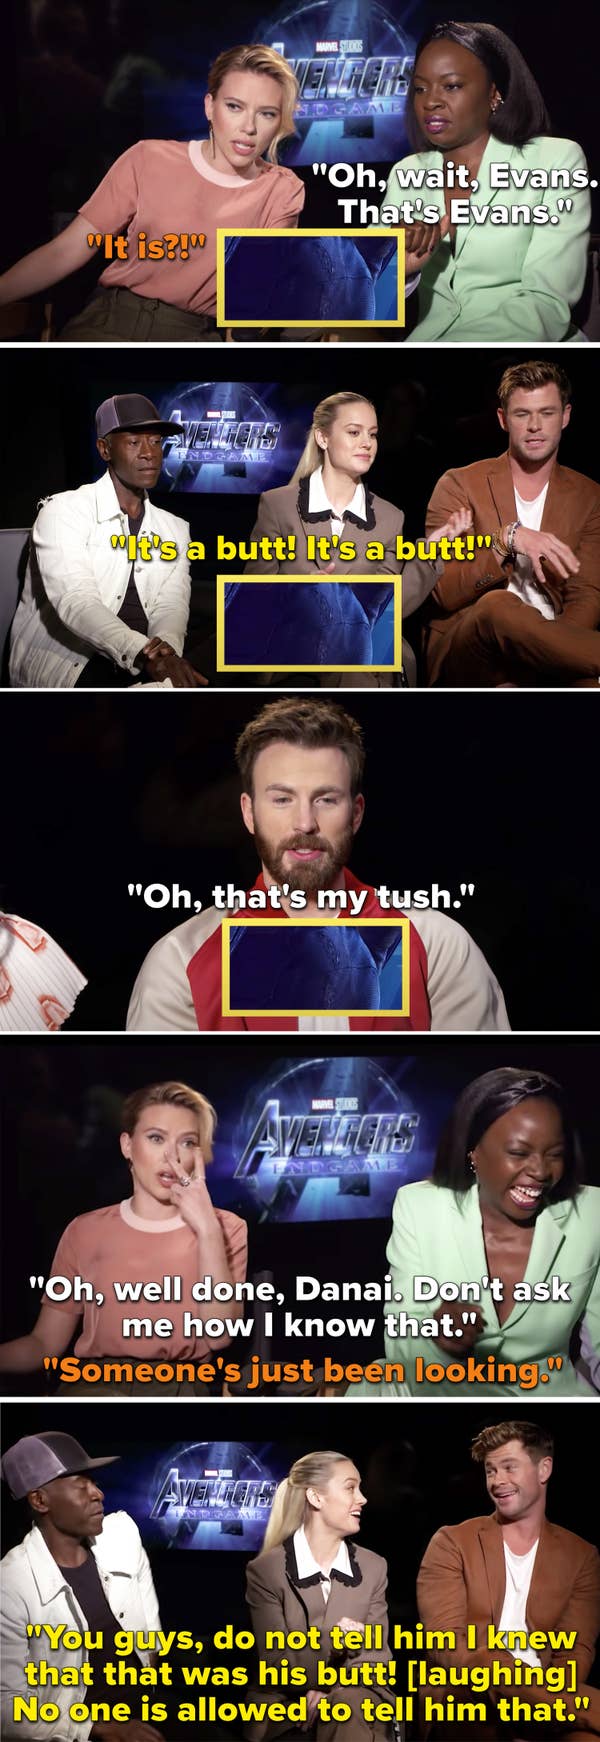 12. When the Avengers: Endgame cast immediately identified Evans' butt.